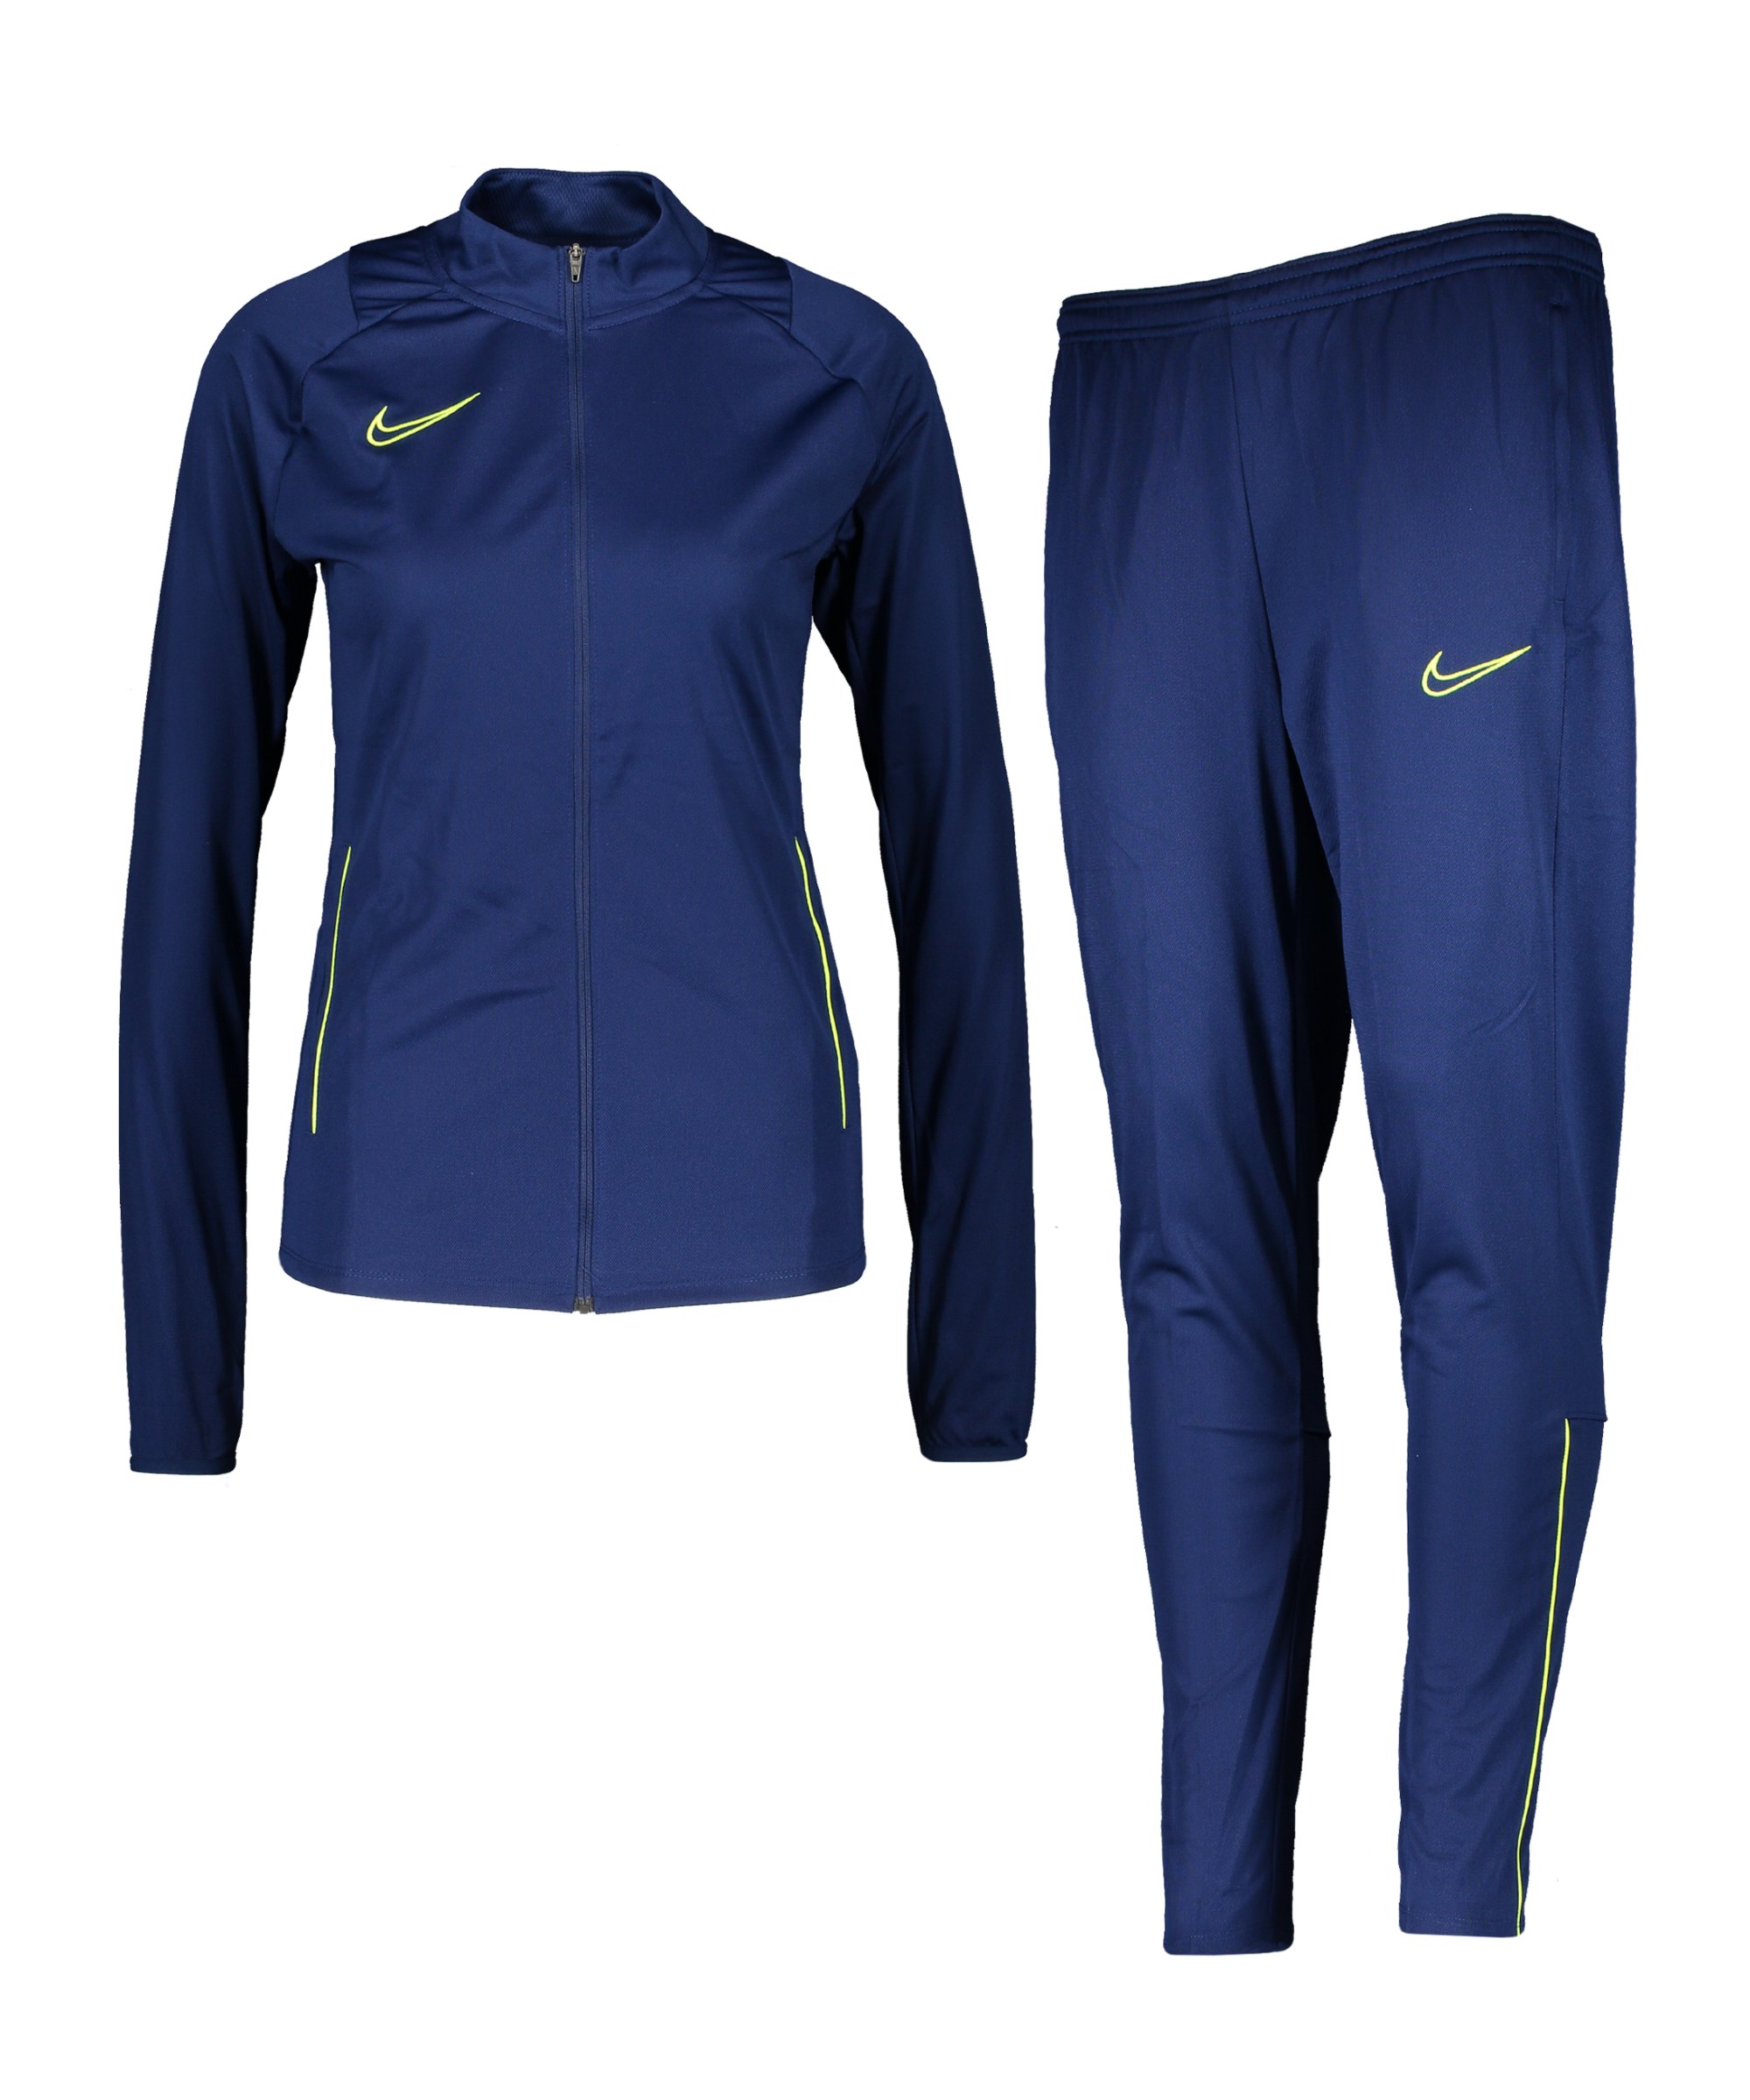 Nike Academy 21 Trainingsanzug Damen Blau F492 - blau